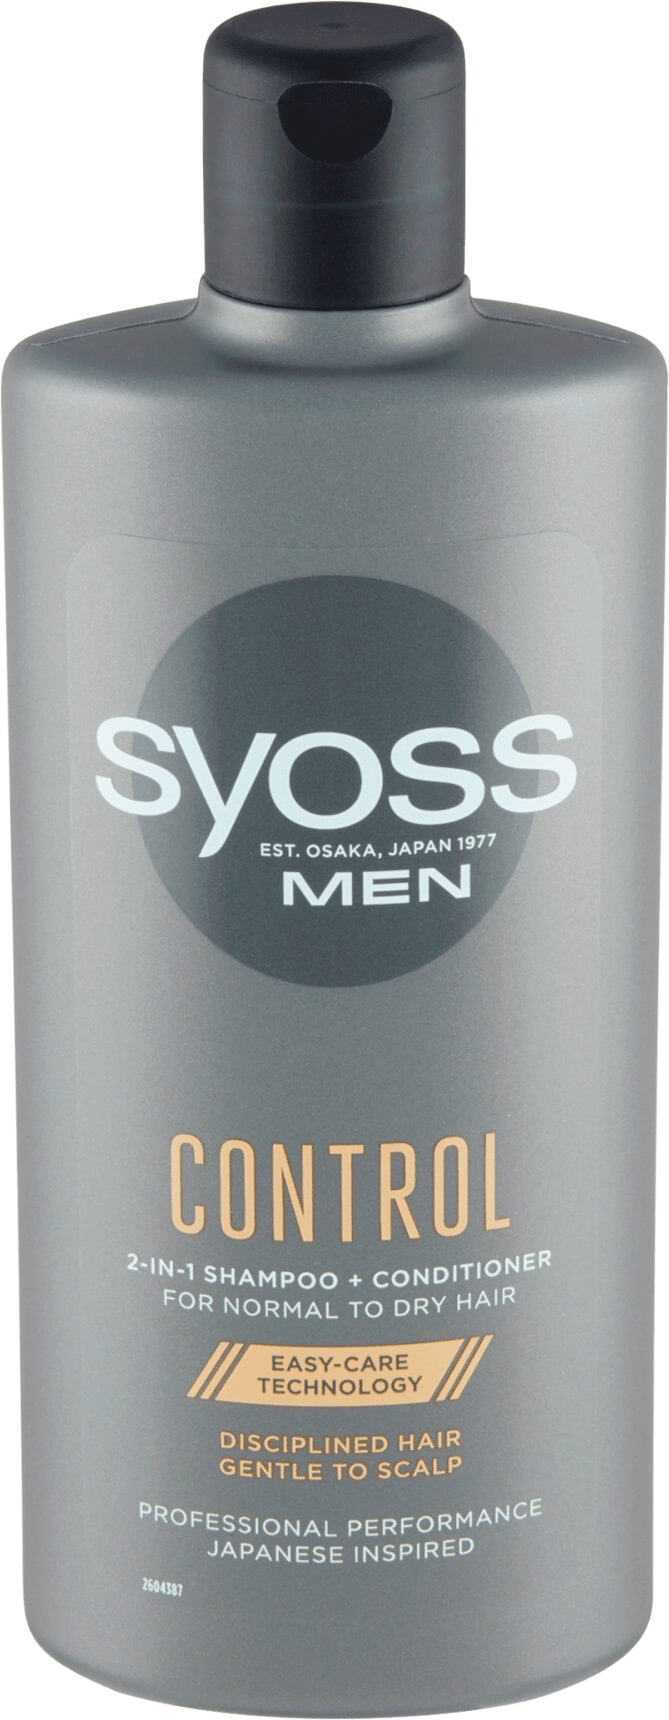 Syoss Šampon a kondicionér pro muže 2 v 1 pro normální až suché vlasy Control (Shampoo + Conditioner) 440 ml